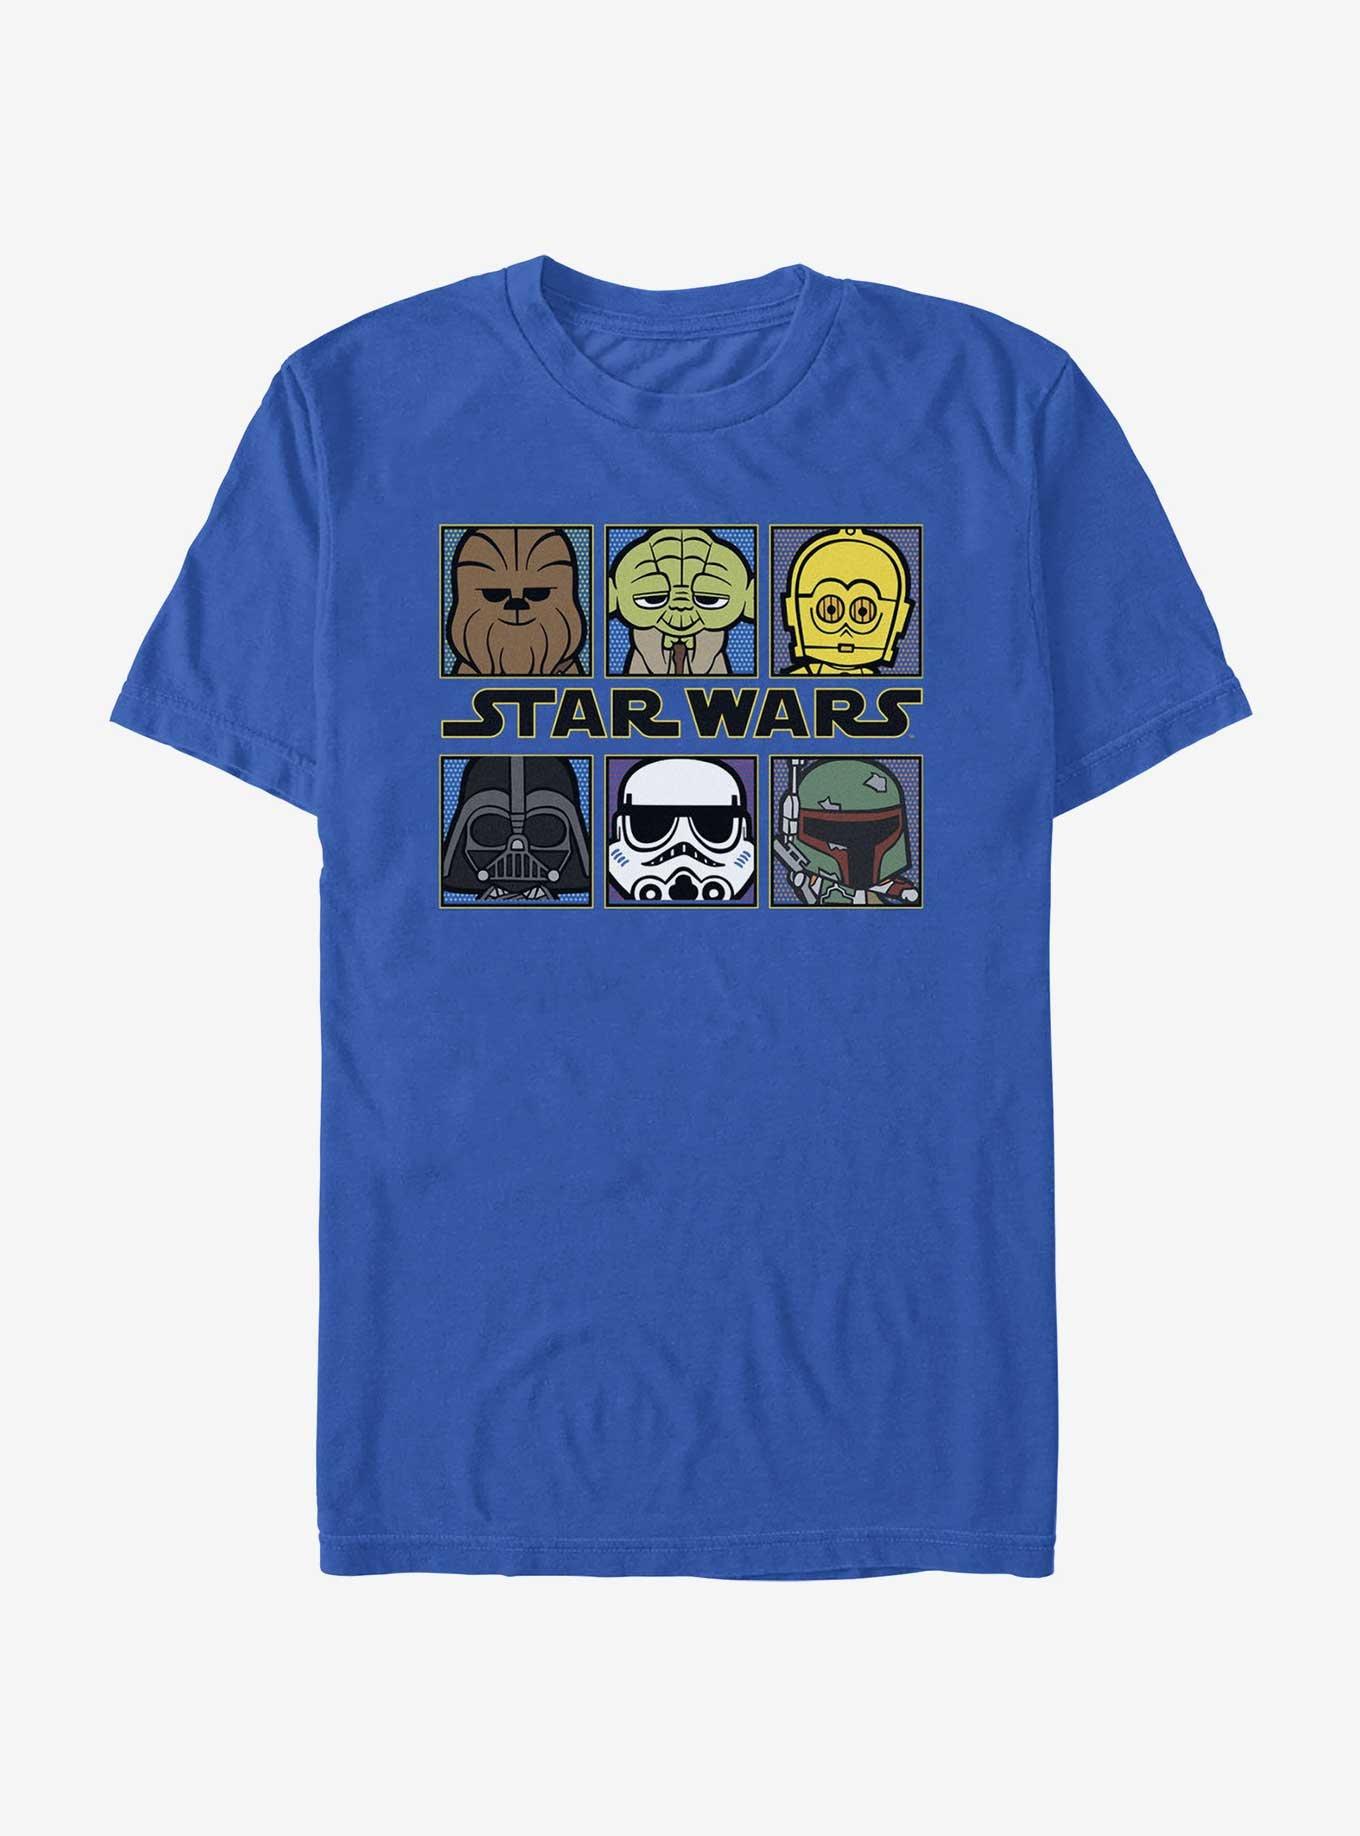 Star Wars Chibi Portraits T-Shirt, , hi-res